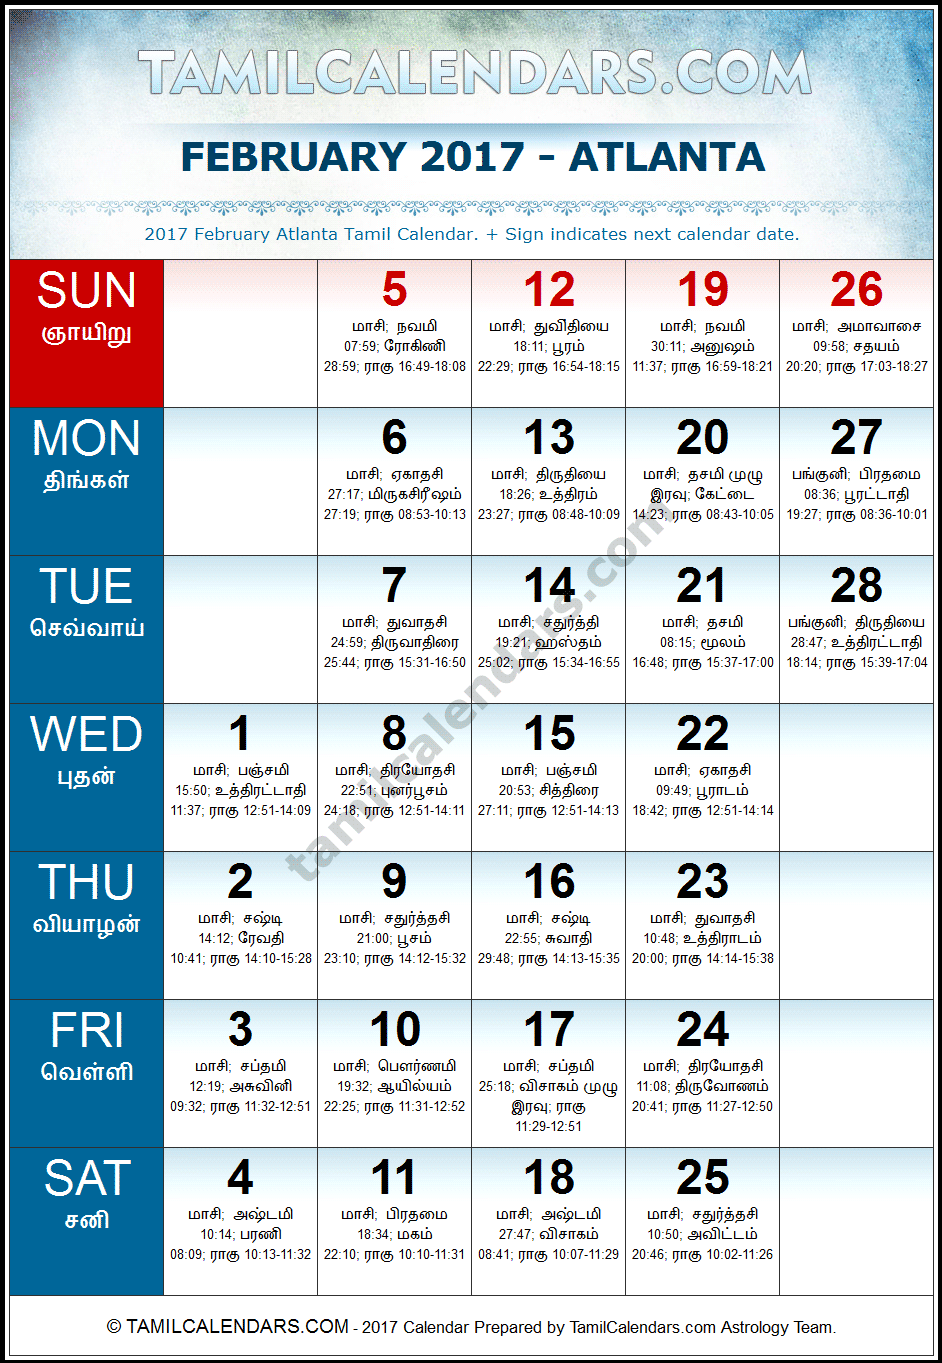 February 2017 Tamil Calendar for Atlanta, USA